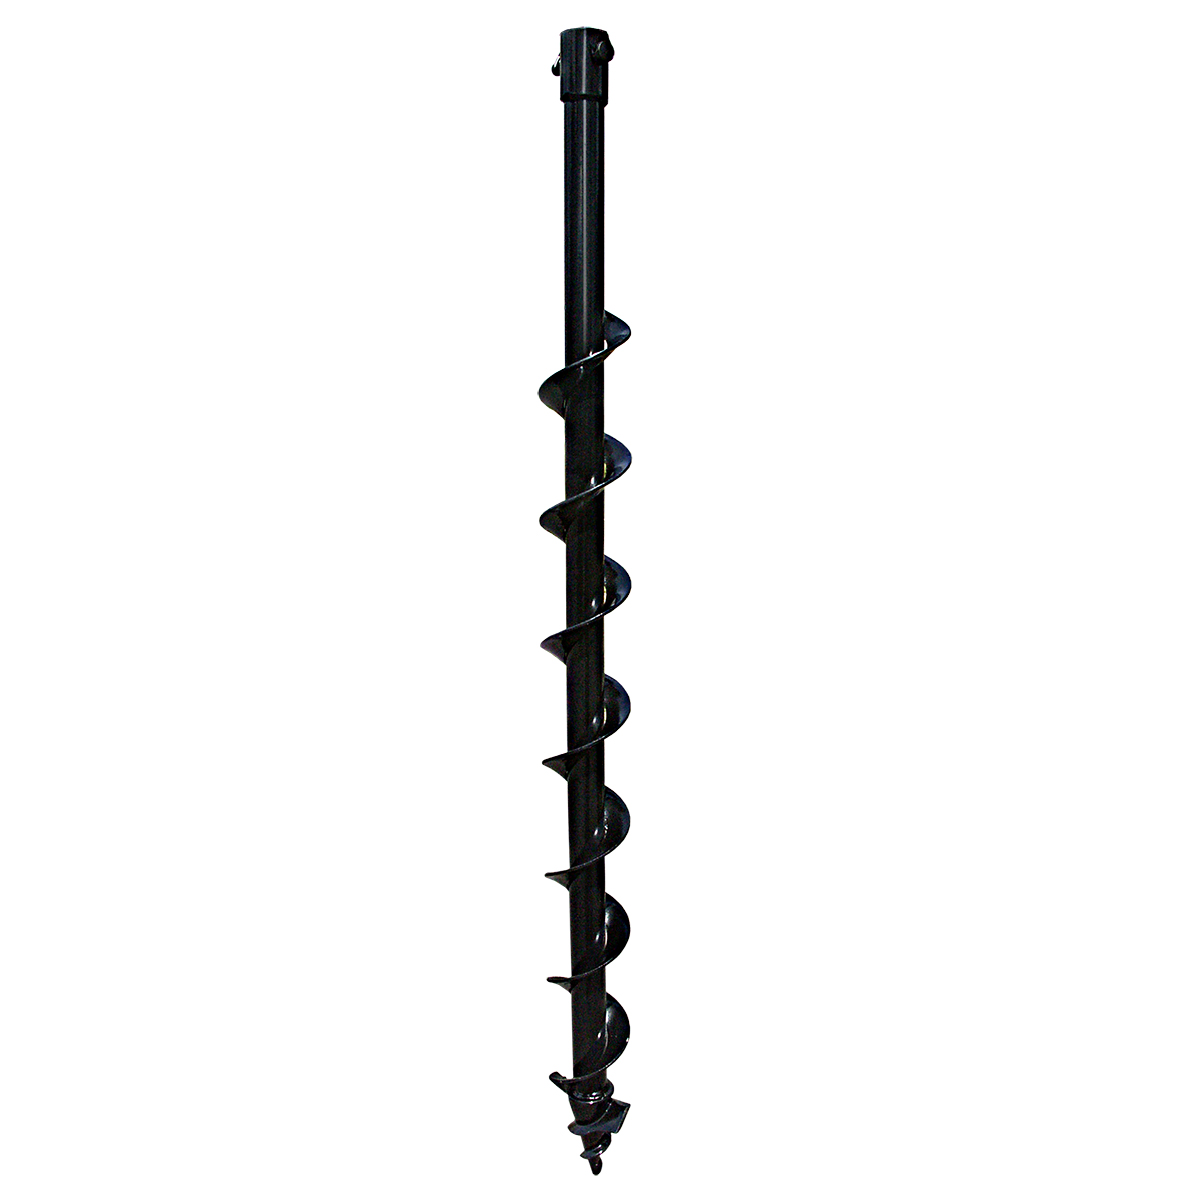 Шнек для мотобура ADA instruments Drill 60/800, однозаходный для грунта, ⌀ 6 см, L= 80 см, диаметр соединения 2 см (А00453)